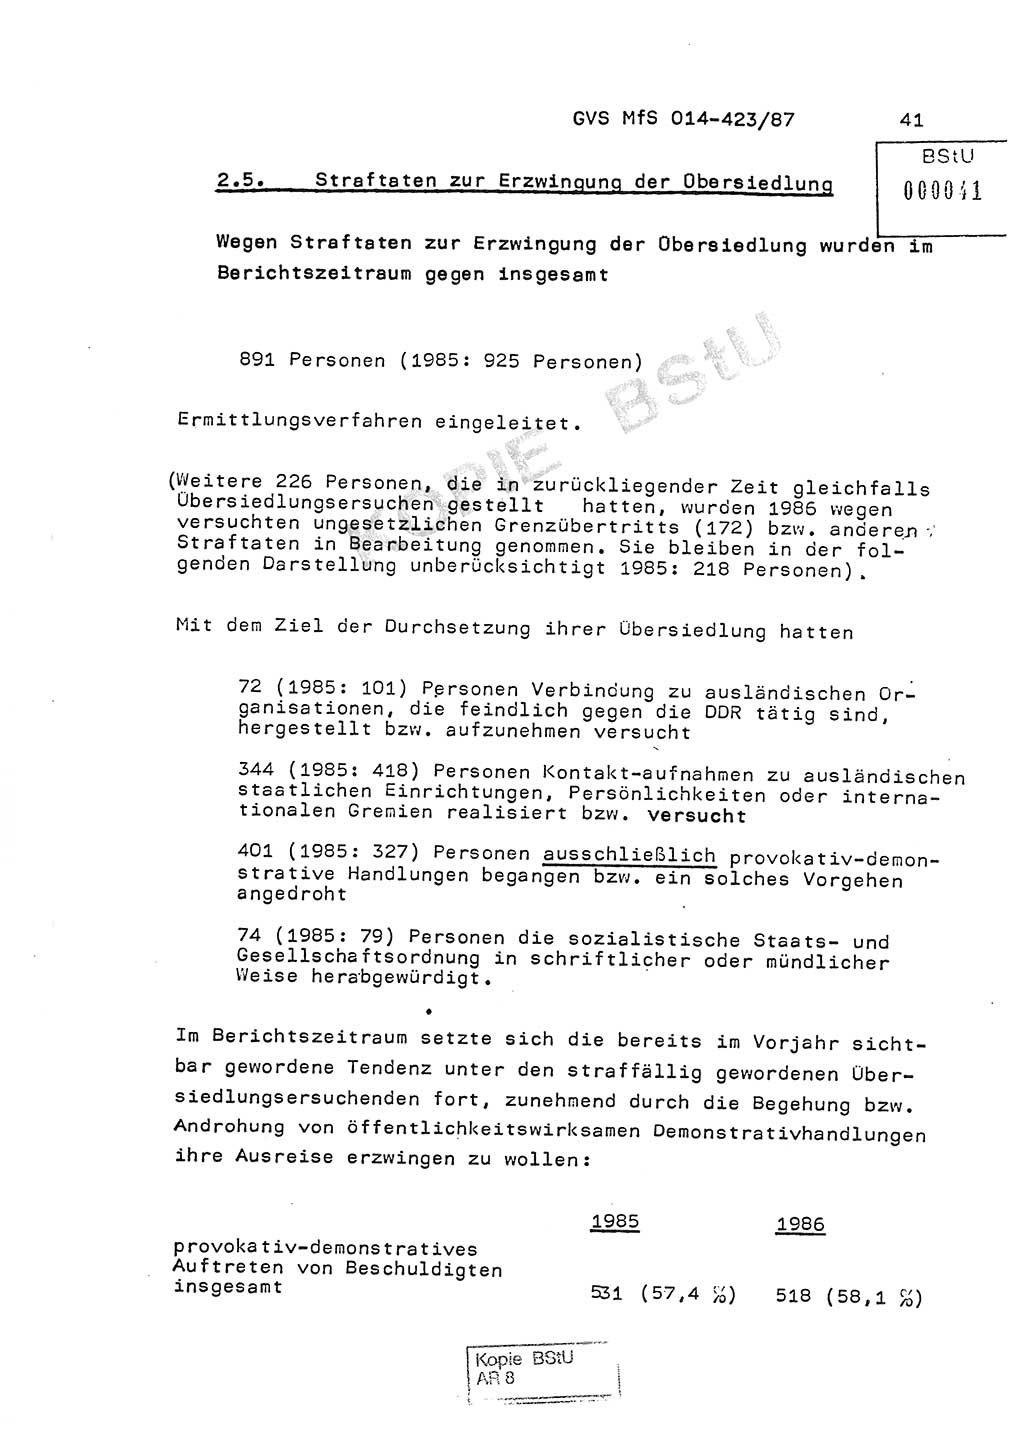 Jahresbericht der Hauptabteilung (HA) Ⅸ 1986, Einschätzung der Wirksamkeit der Untersuchungsarbeit im Jahre 1986, Ministerium für Staatssicherheit (MfS) der Deutschen Demokratischen Republik (DDR), Hauptabteilung Ⅸ, Geheime Verschlußsache (GVS) o014-423/87, Berlin 1987, Seite 41 (Einsch. MfS DDR HA Ⅸ GVS o014-423/87 1986, S. 41)